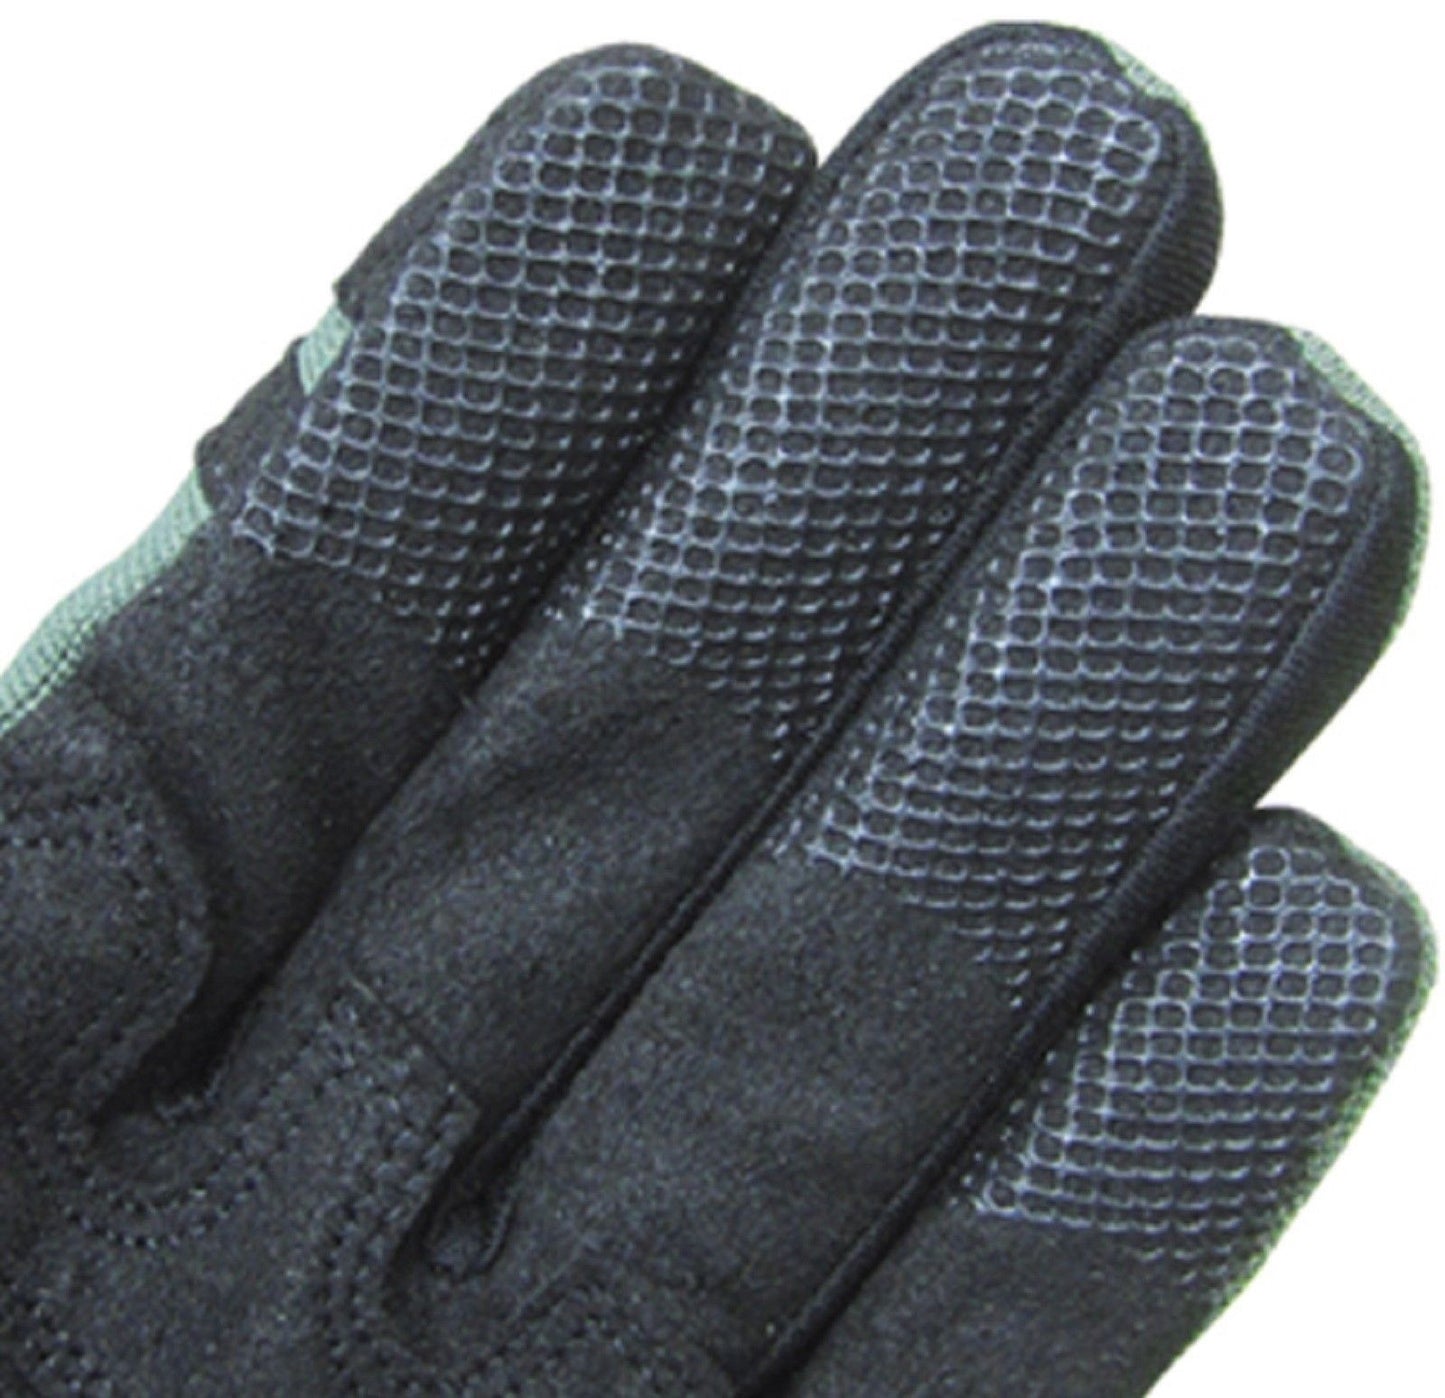 Condor Outdoor Tactical Shooter Police Gloves